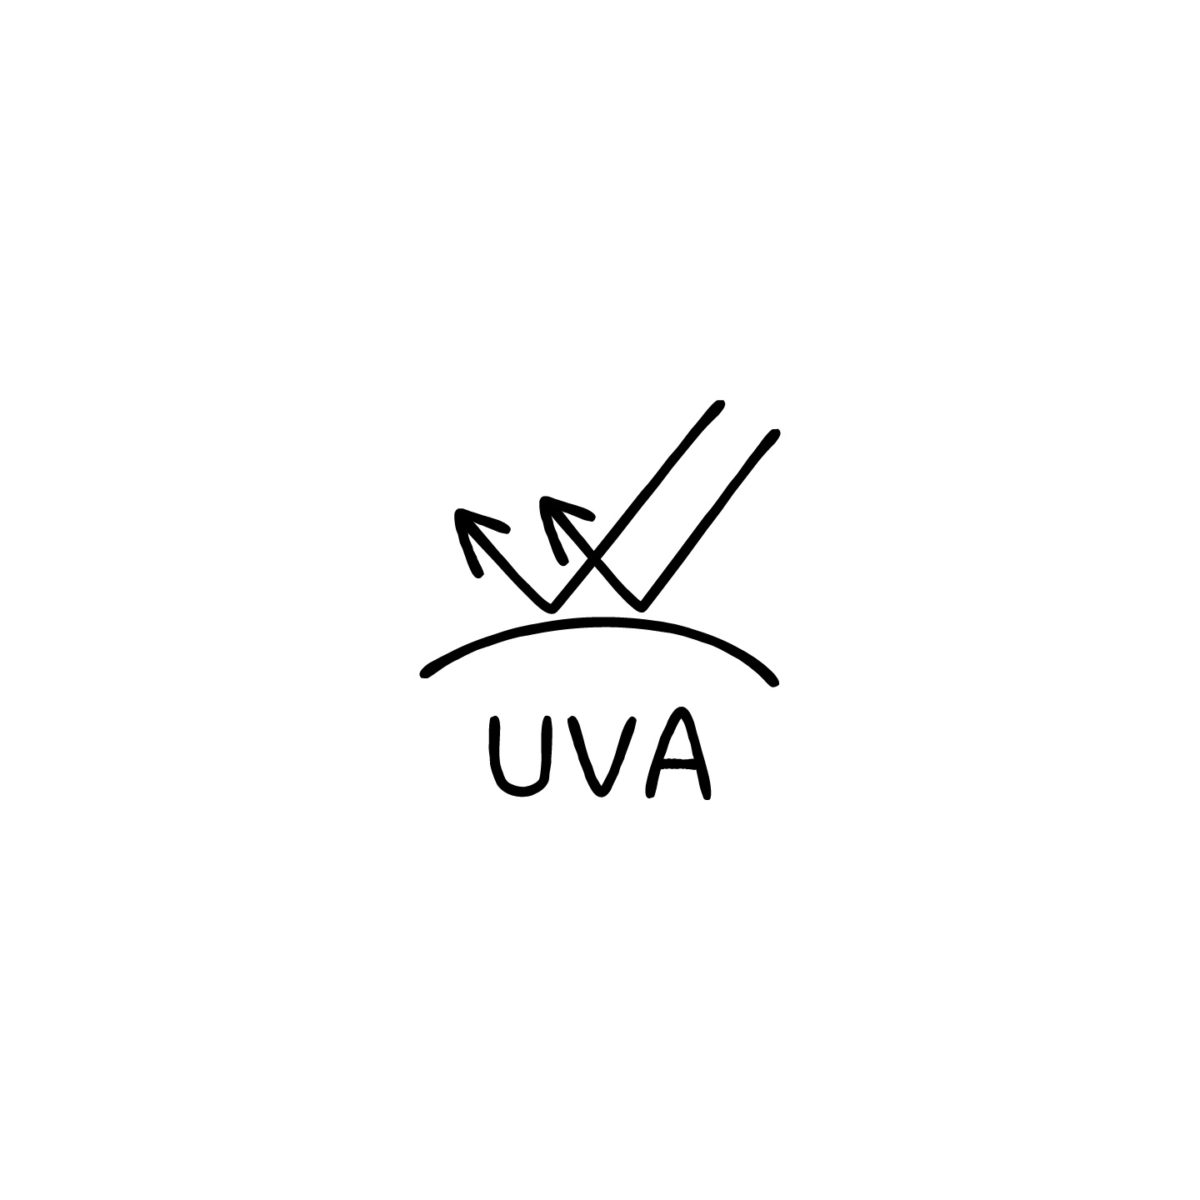 UVカットUVAのアイコン